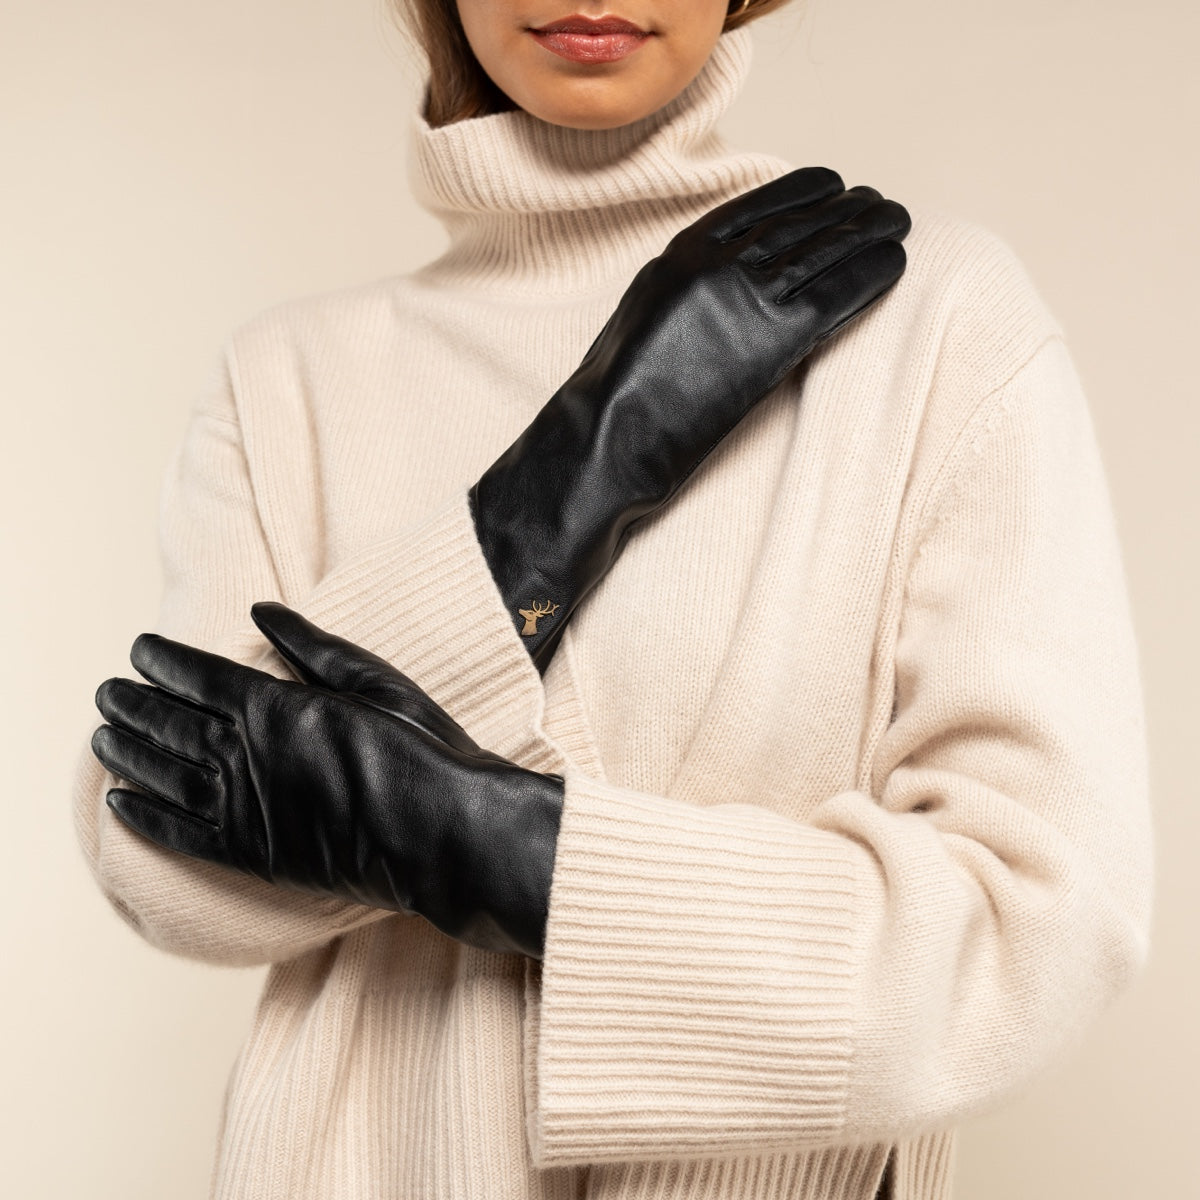 Leren Handschoenen Dames Zwart Extra Lang – Schwartz & von Halen® – Premium Leren Handschoenen - 8